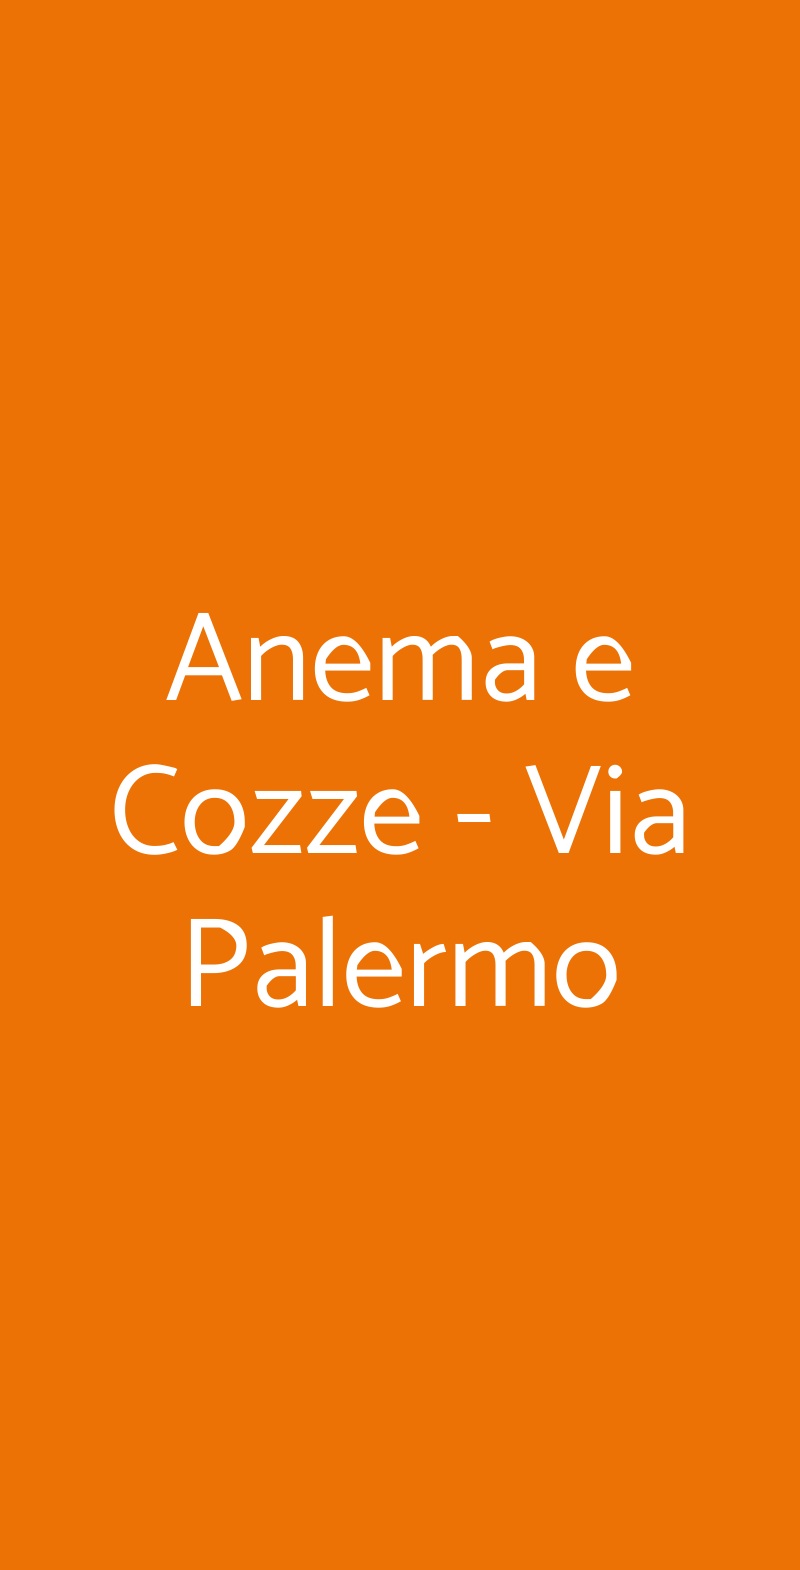 Anema e Cozze - Via Palermo Milano menù 1 pagina